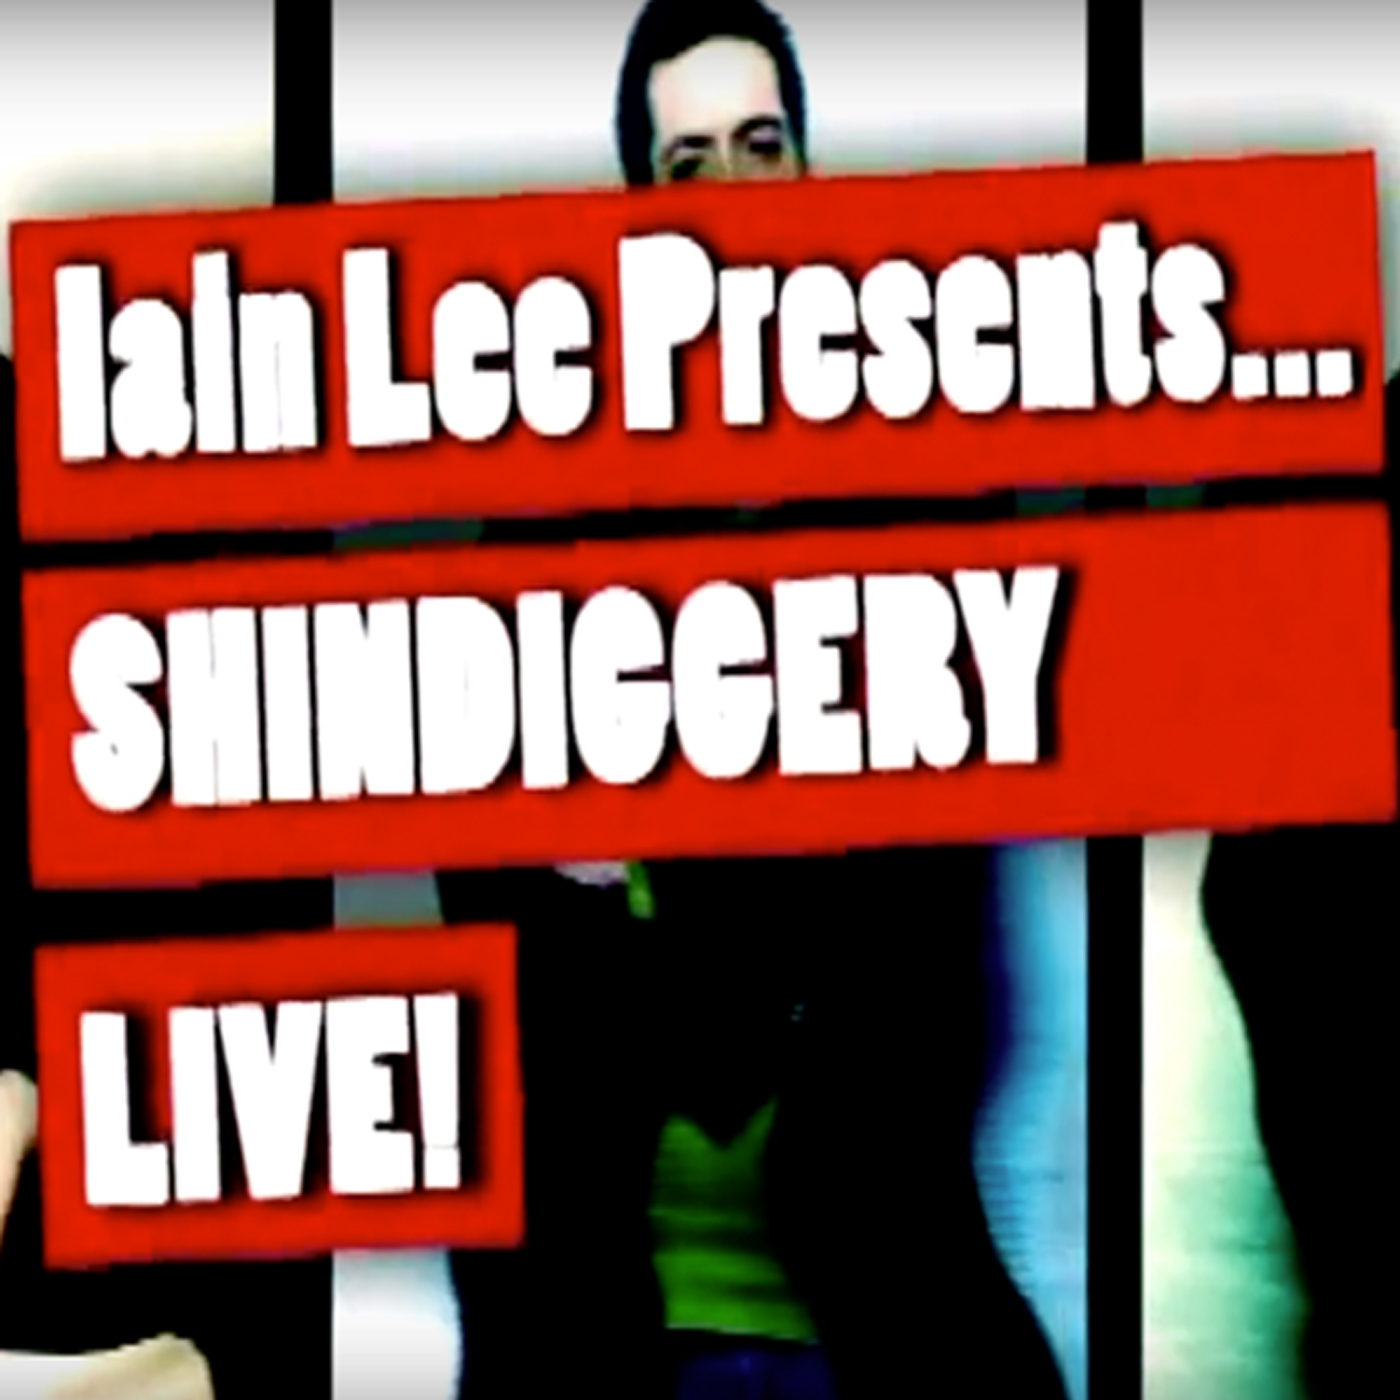 Iain Lee presents Shindiggery Episode 4 and a half post thumbnail image